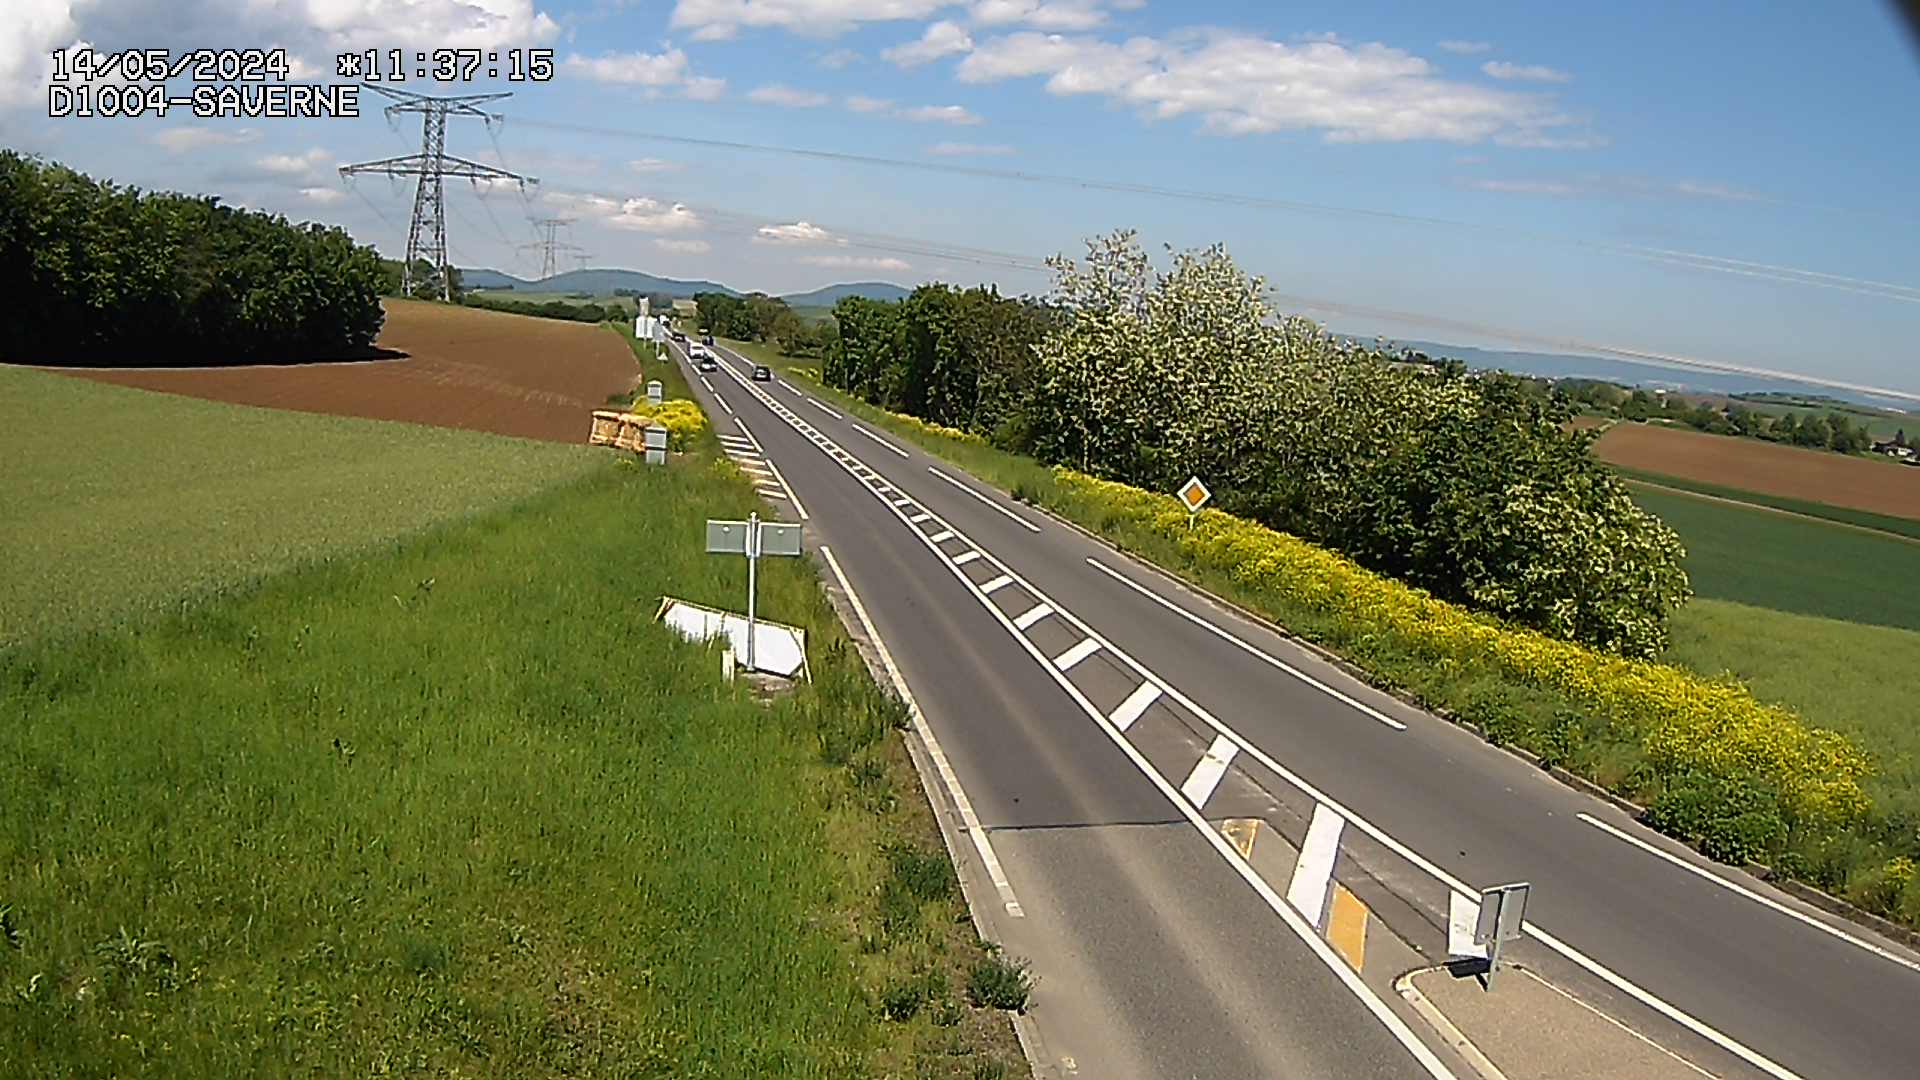 Webcam routière sur la D1004 en direction de Saverne à Wasselonne